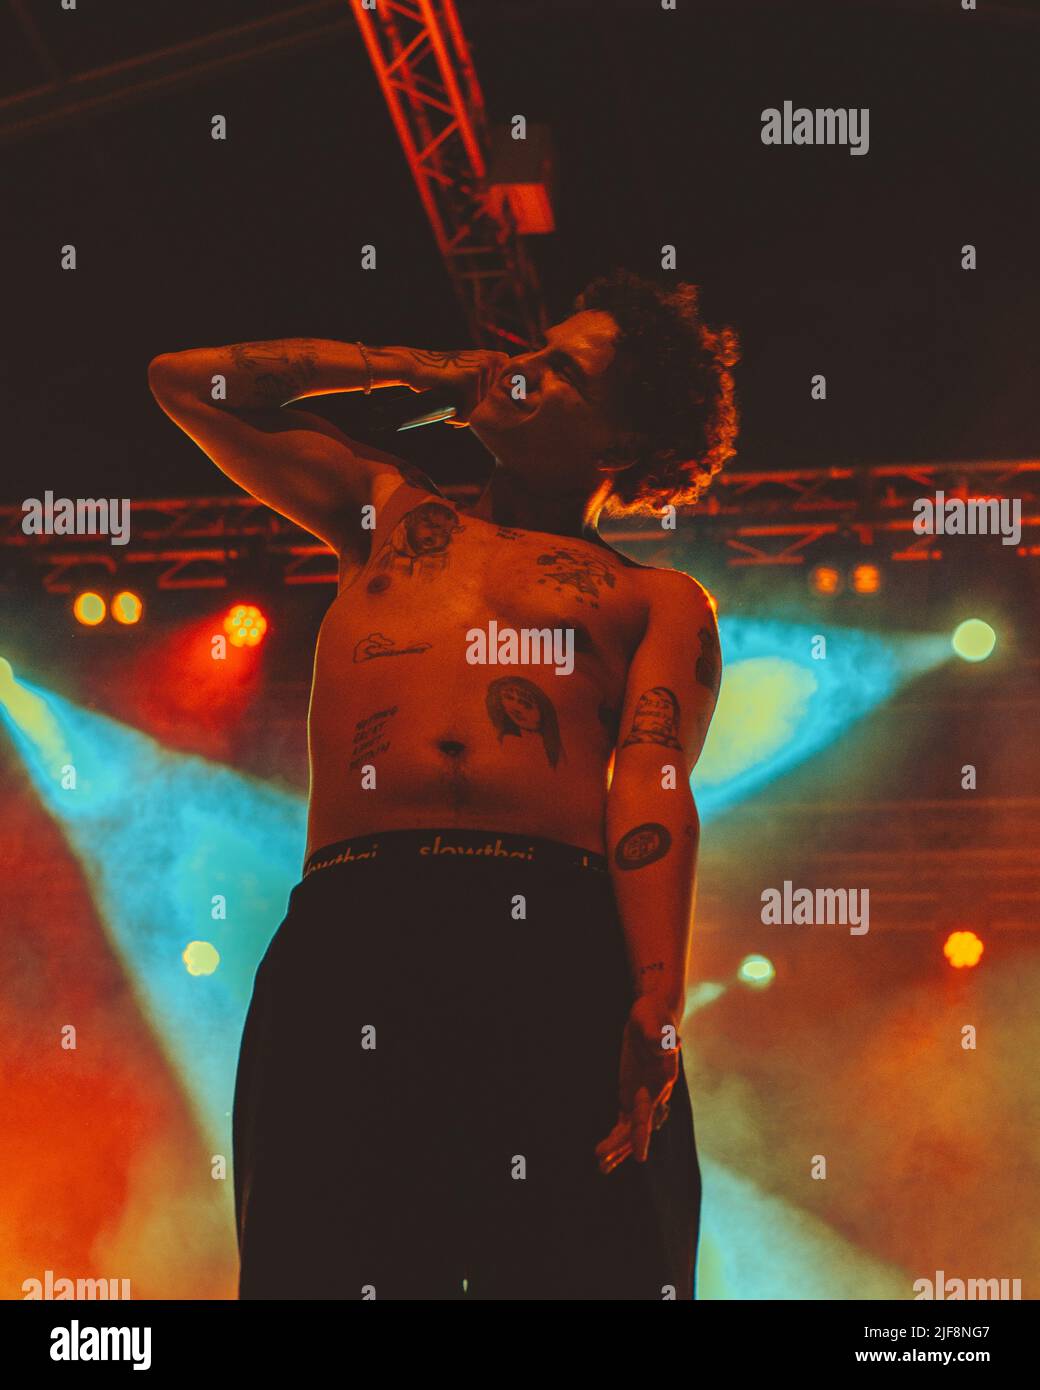 30/06/2022 - der britische Rapper SLOWTHAI tritt live im Circolo Magnolia in Mailand auf Stockfoto